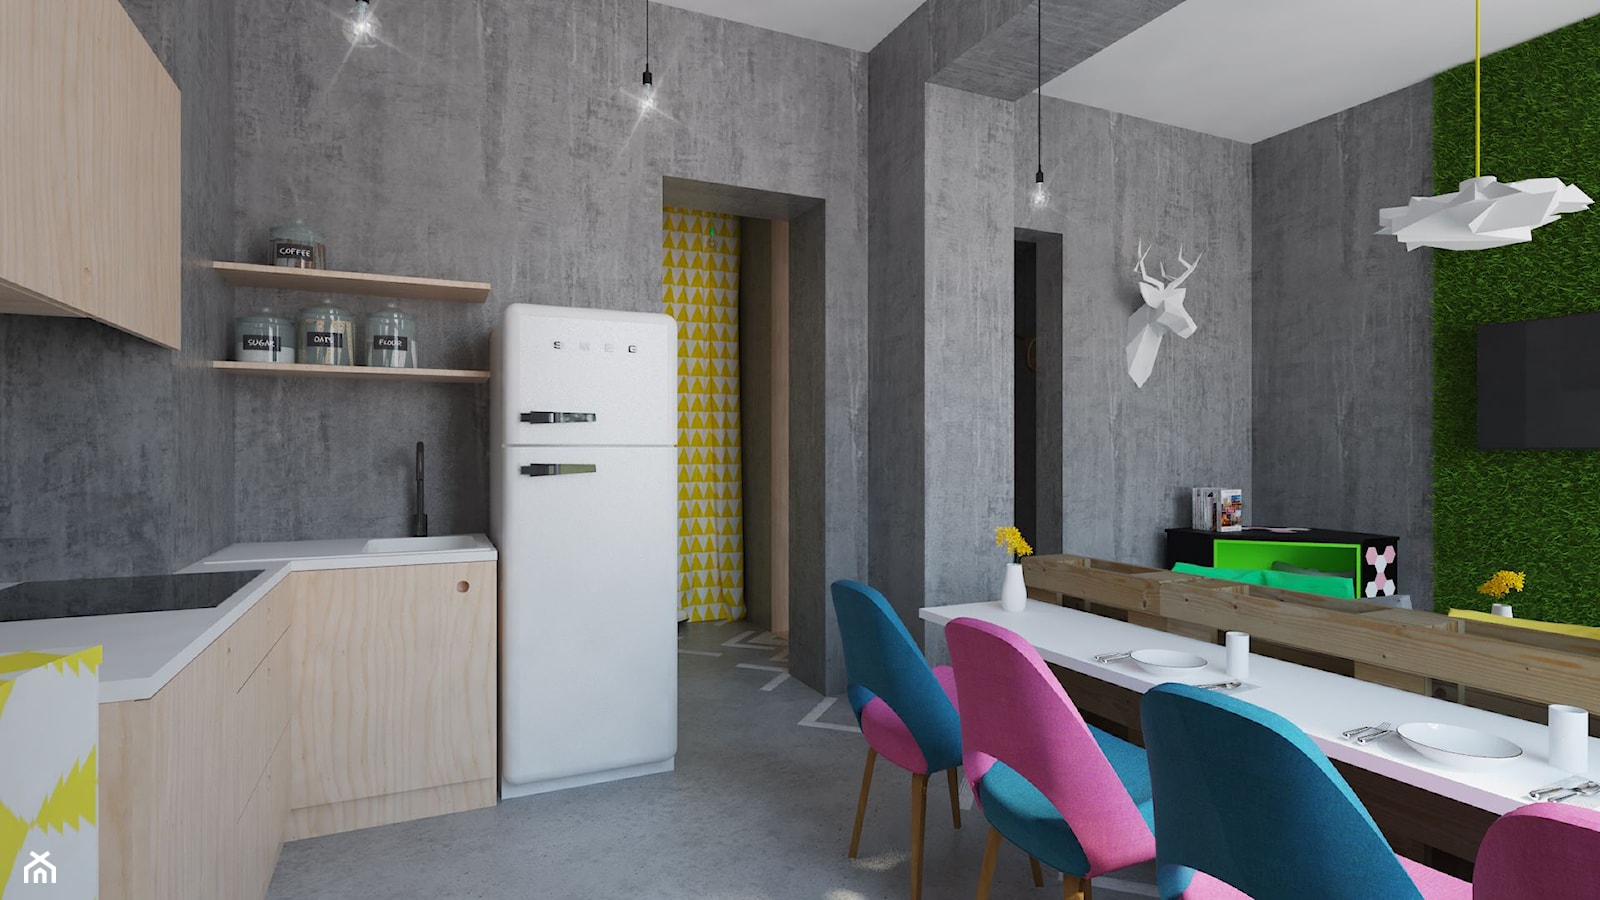 Oryginalne mieszkanie z betonem i sklejką - Średnia szara jadalnia w salonie w kuchni - zdjęcie od Pracownia Aranżacji Wnętrz "O-kreślarnia" - Homebook